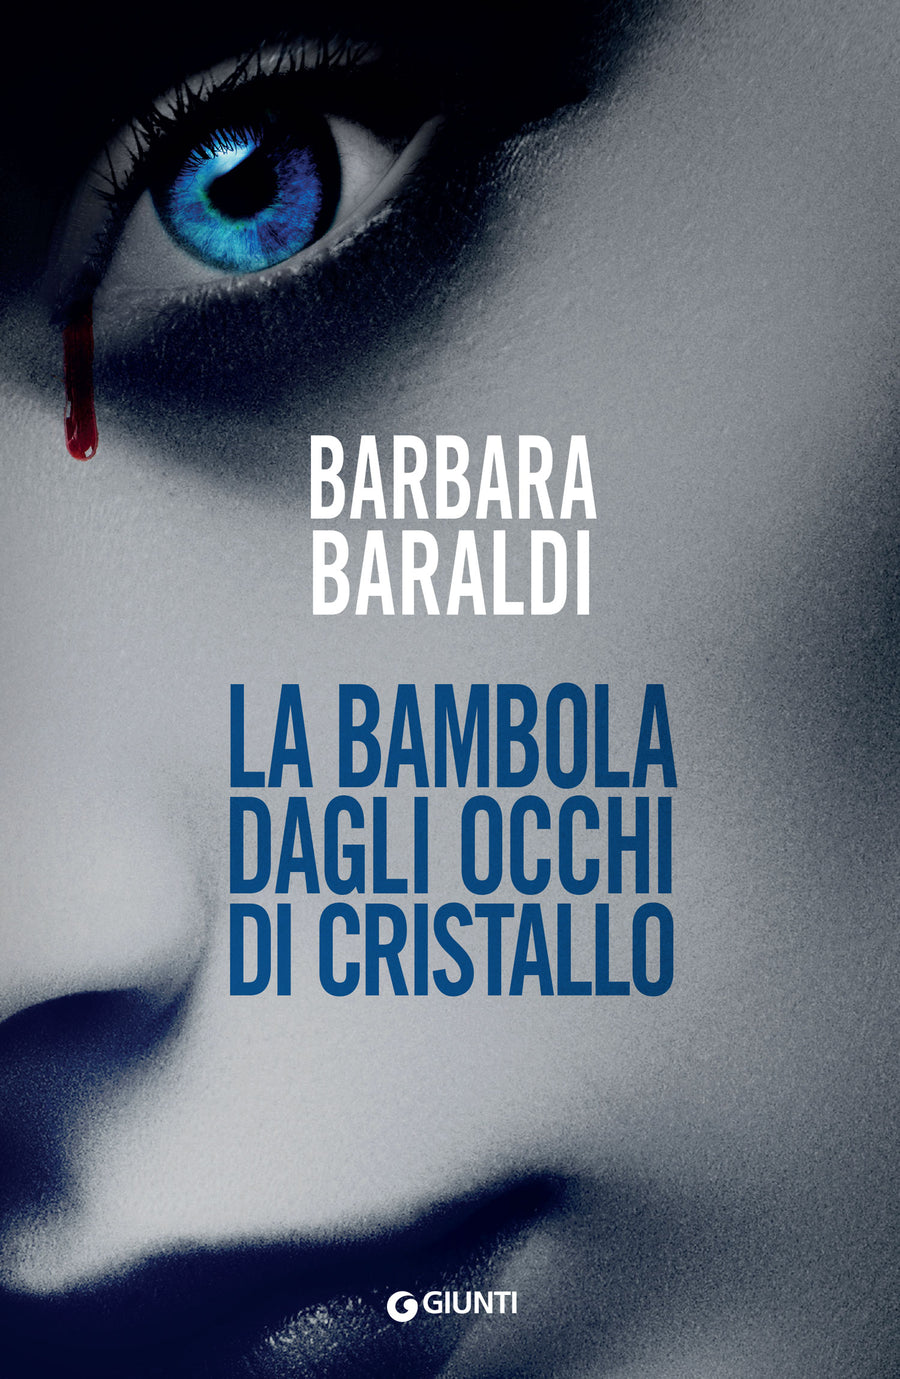 Barbara Baraldi racconta "La bambola dagli occhi di cristallo". Appuntamento a Milano